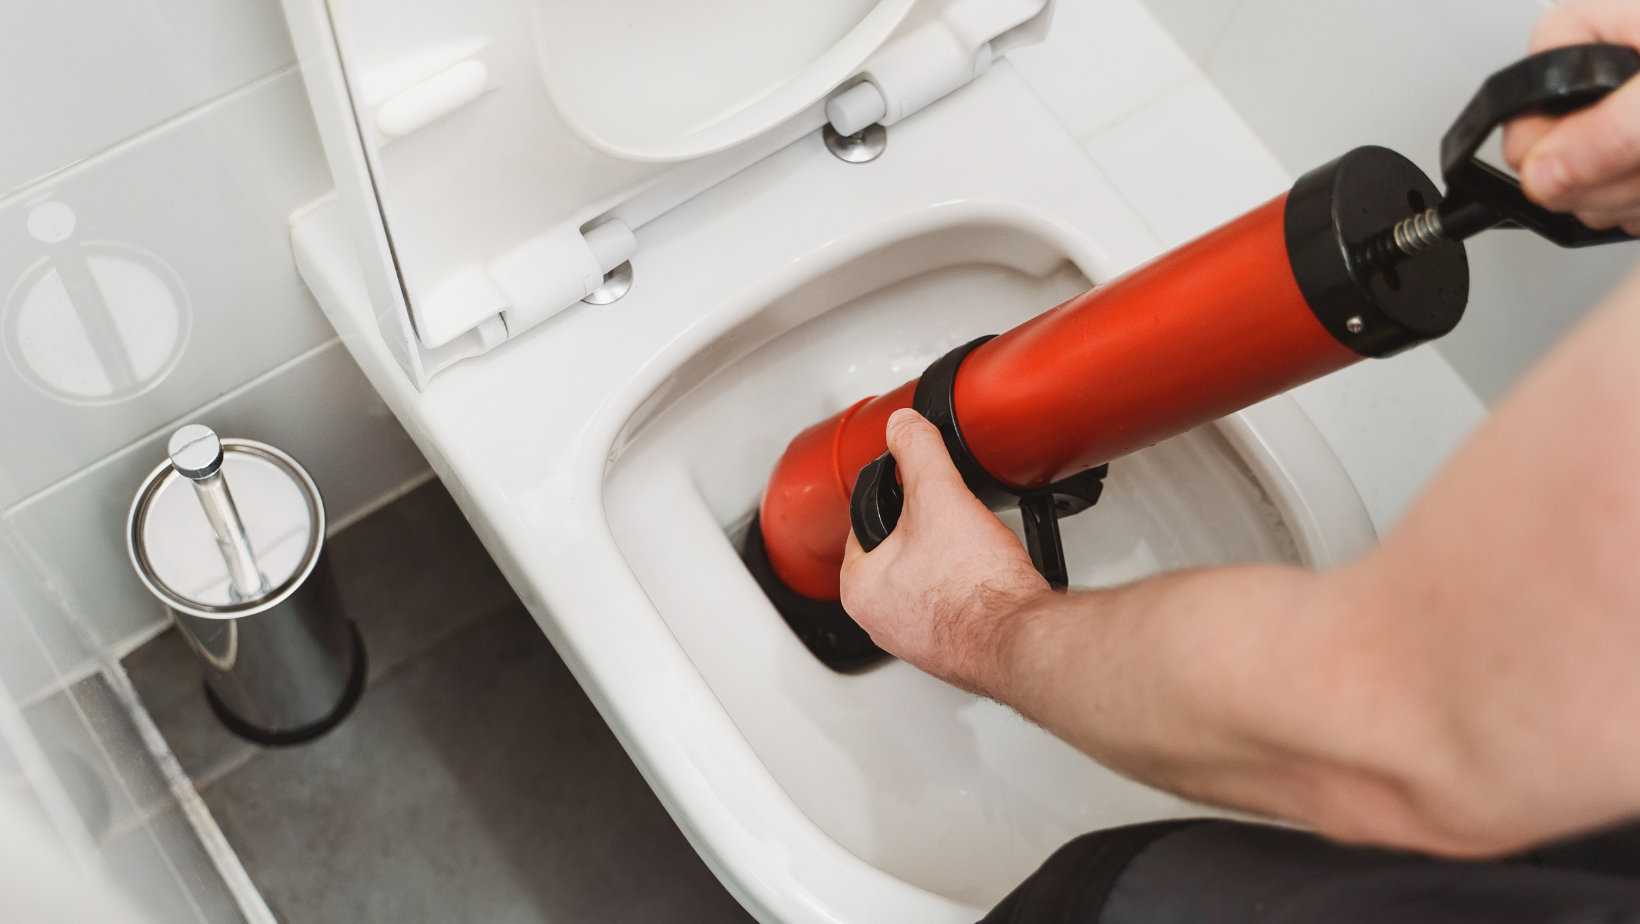 Comment deboucher un wc avec une pompe a debouchage